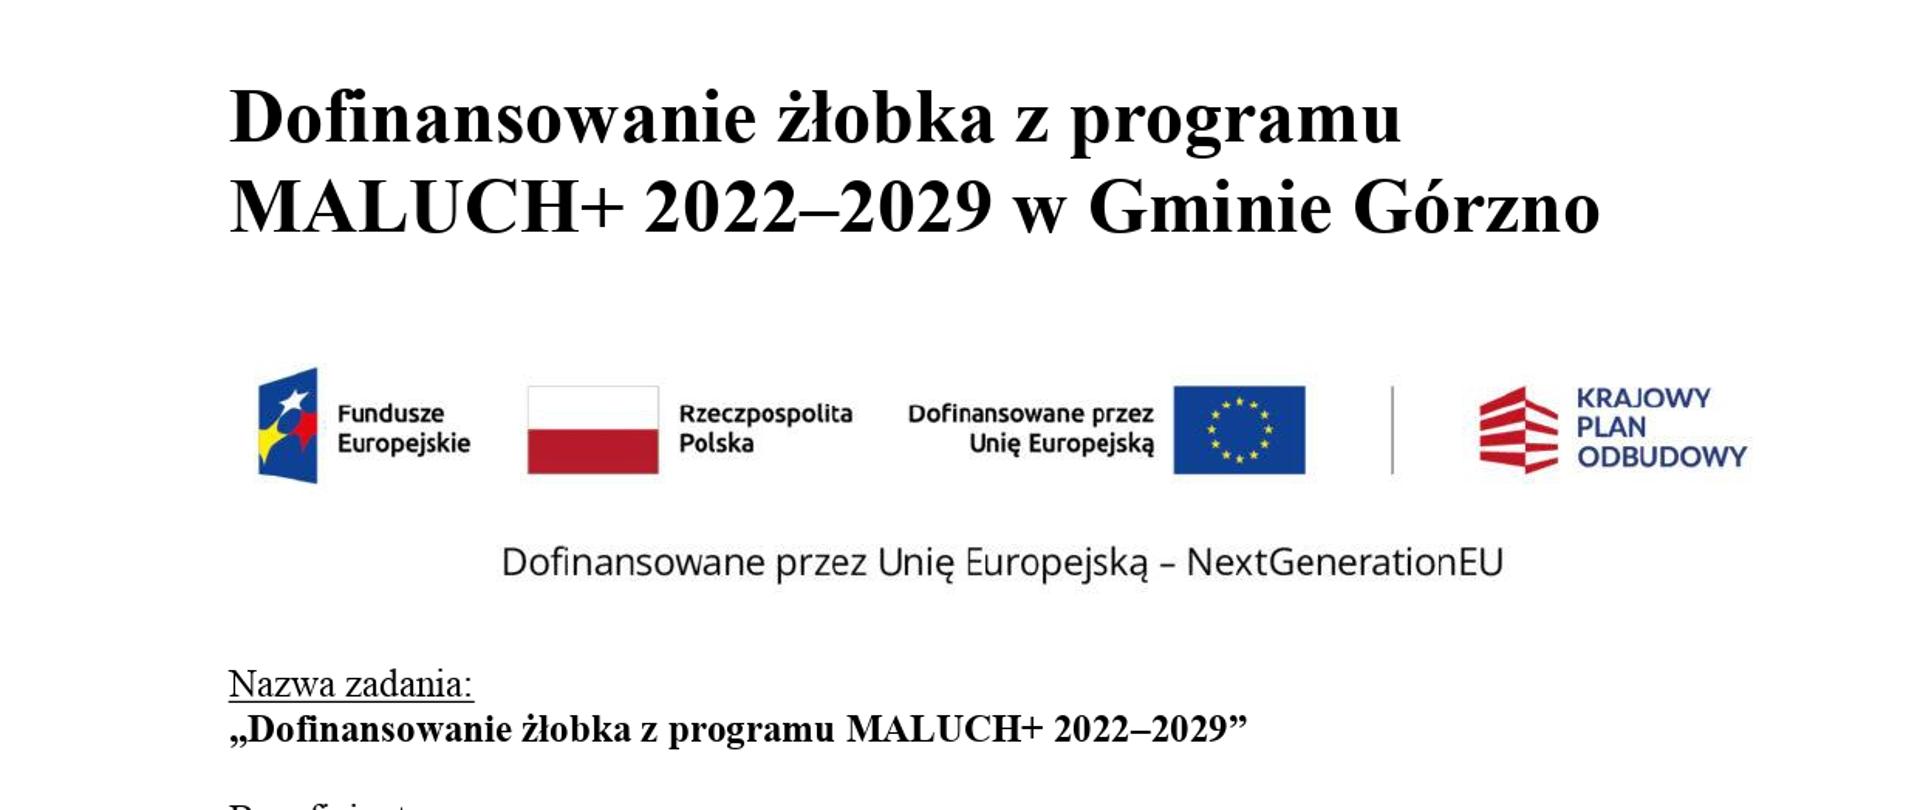 Informacja o dofinansowaniu z programu Maluch + 2022-2029